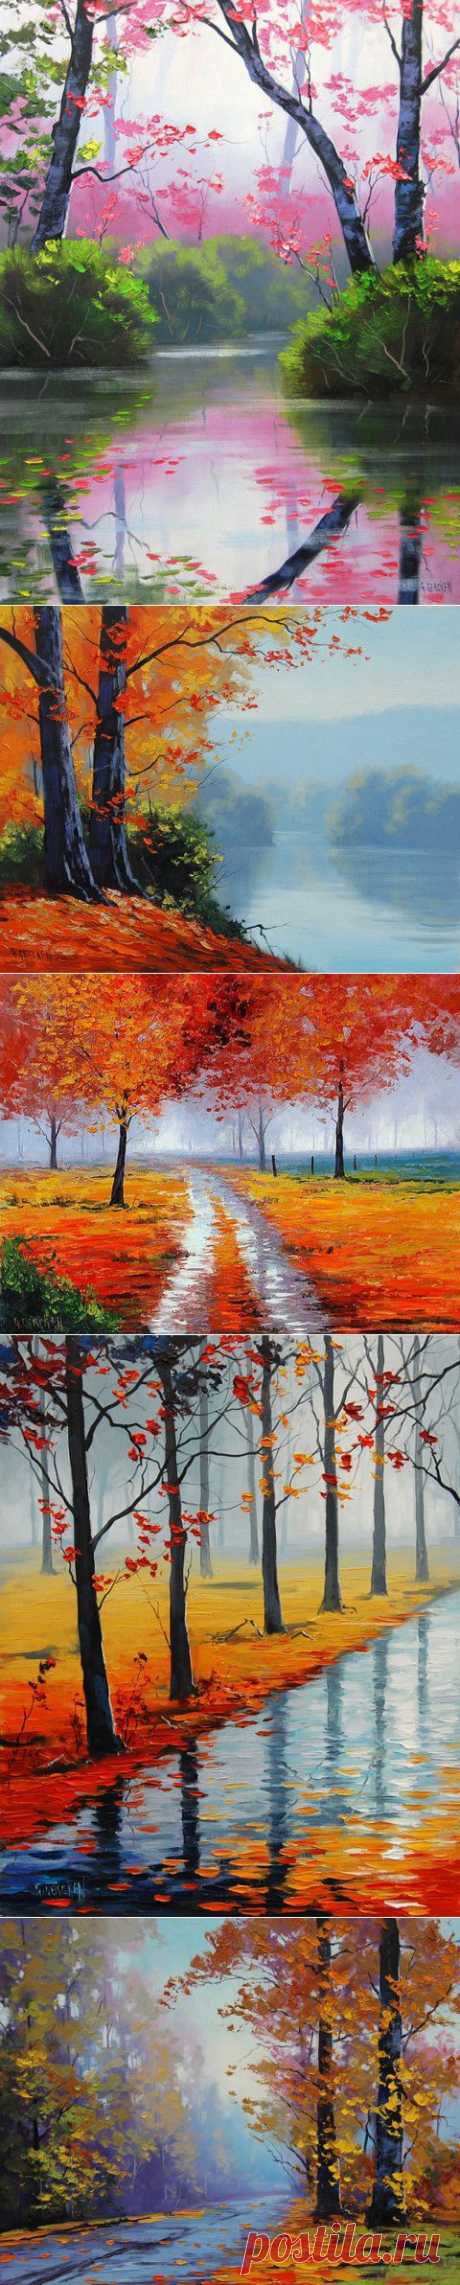 Красочная осень на картинах Graham Gercken | 5минутка